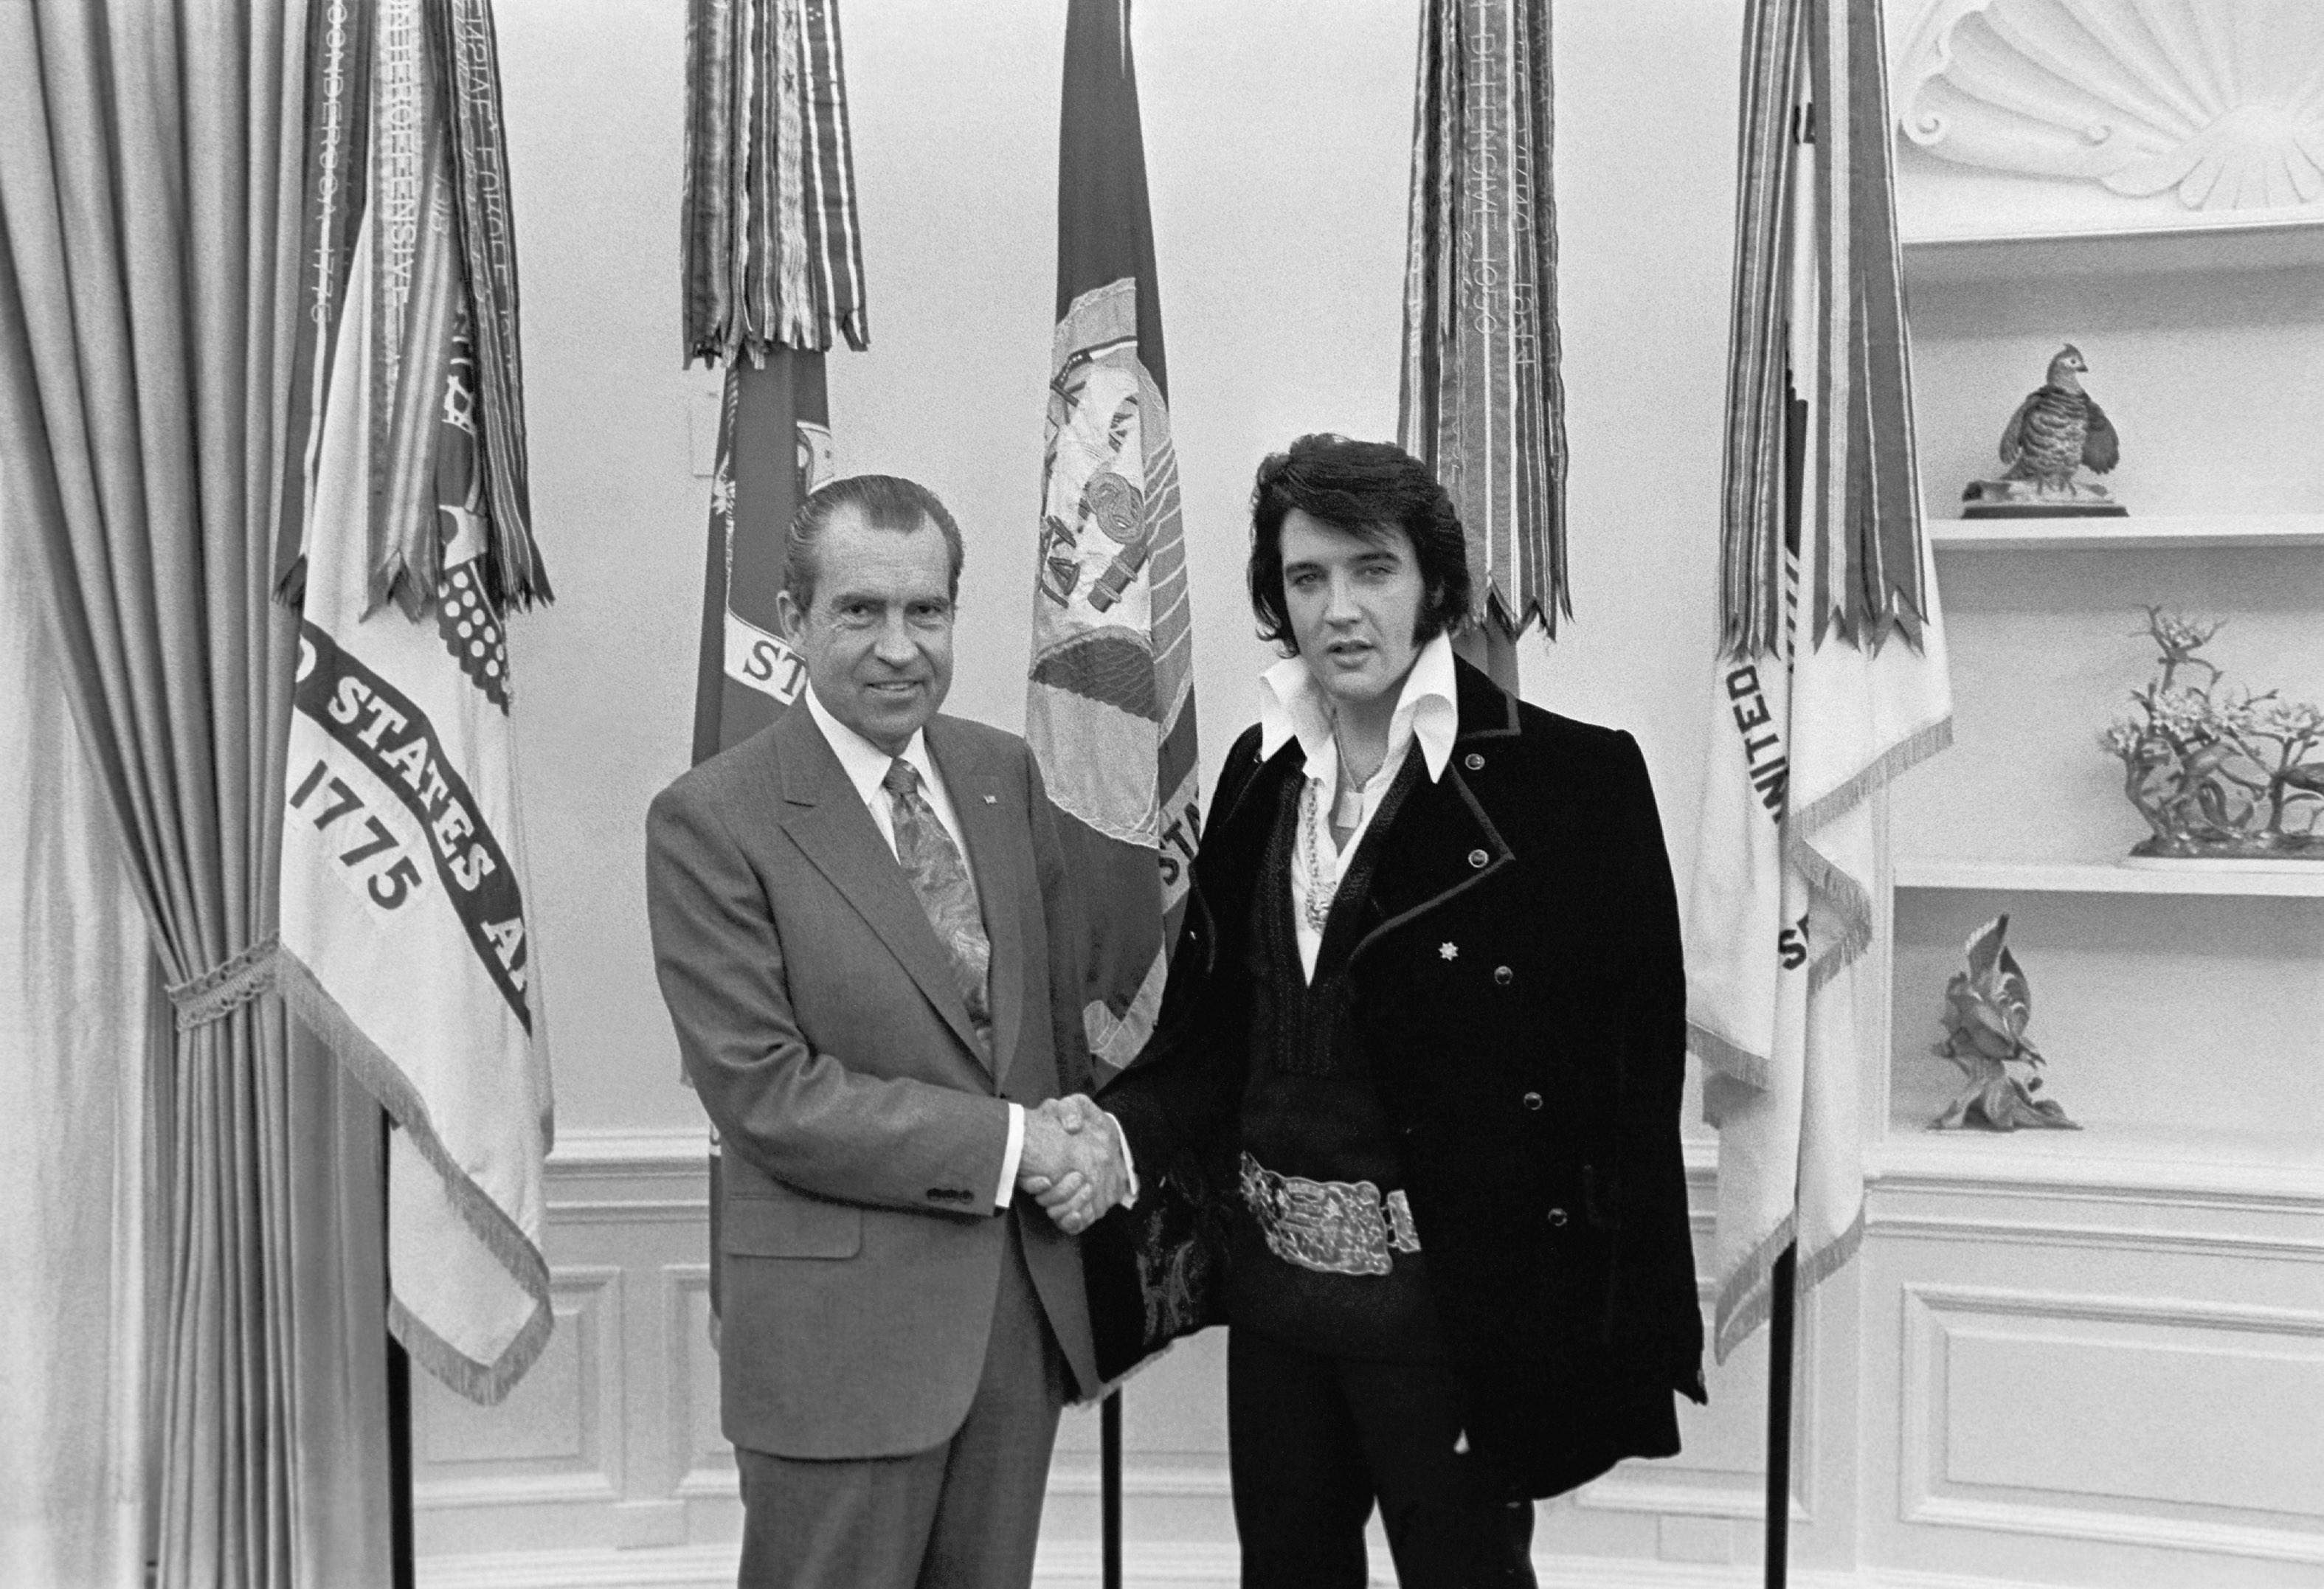 "Elvis & Nixon" movie review by Lucas Mirabella